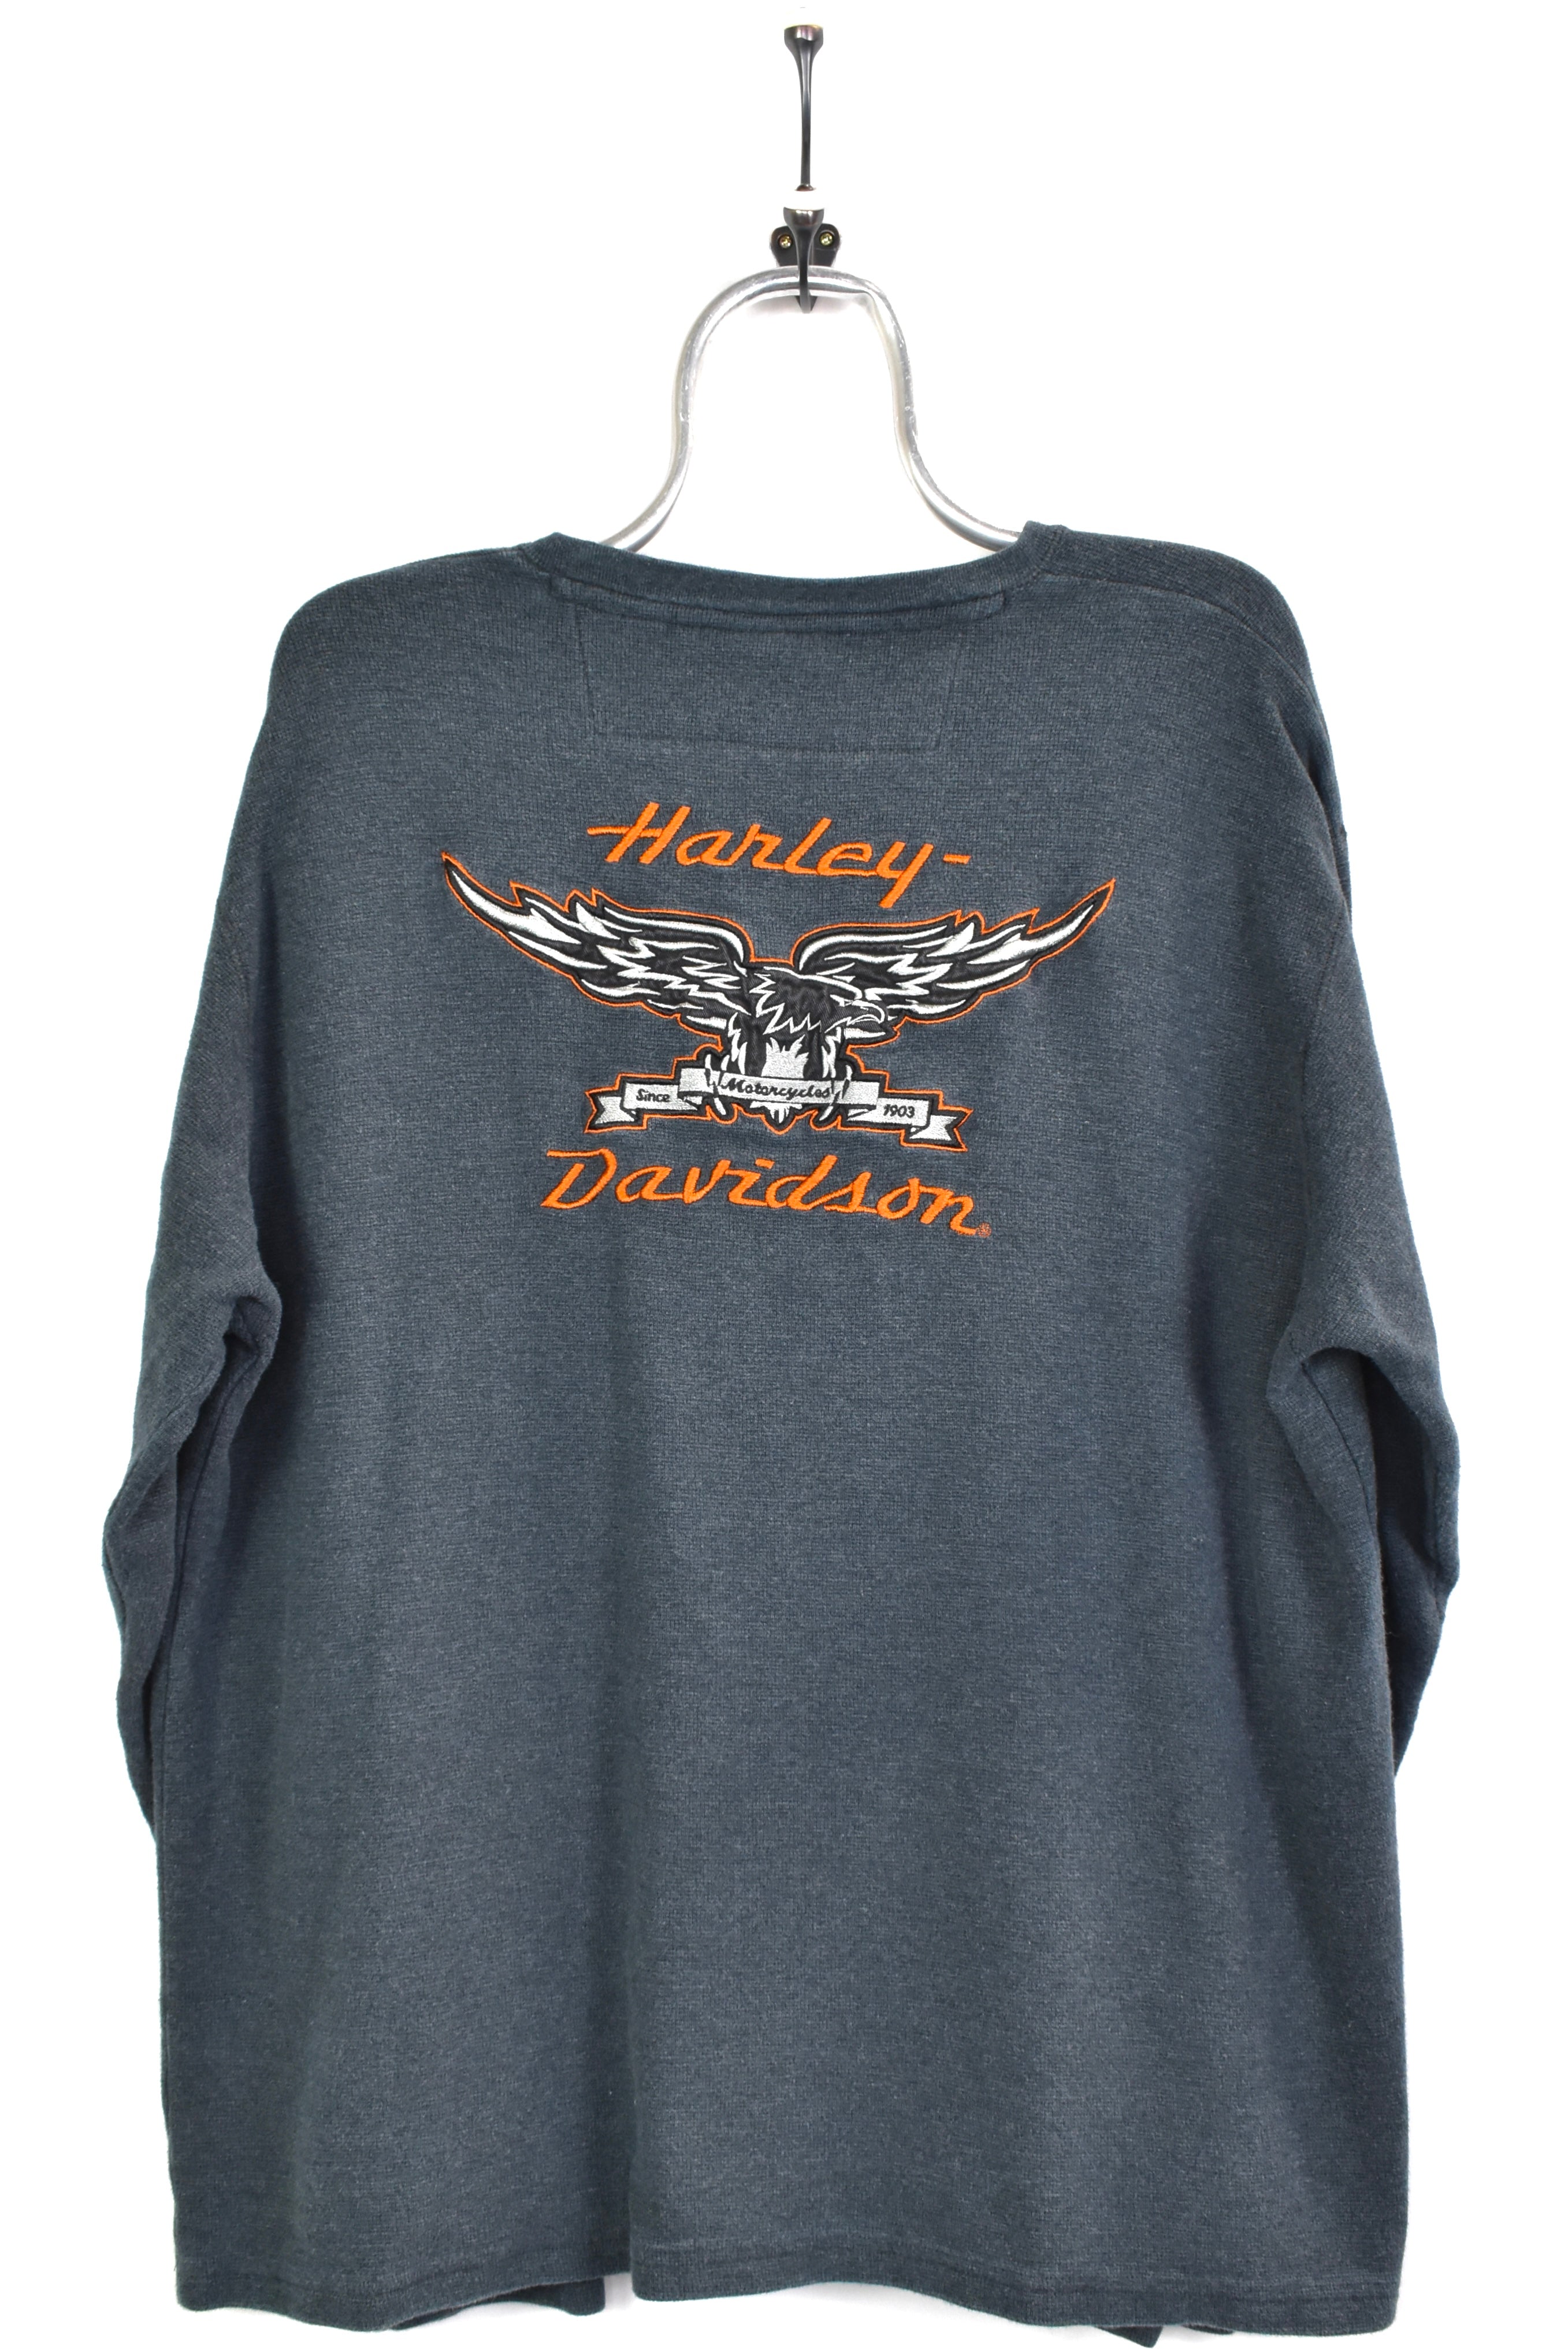 Vintage Harley Davidson embroidered grey sweatshirt | XXL HARLEY DAVIDSON